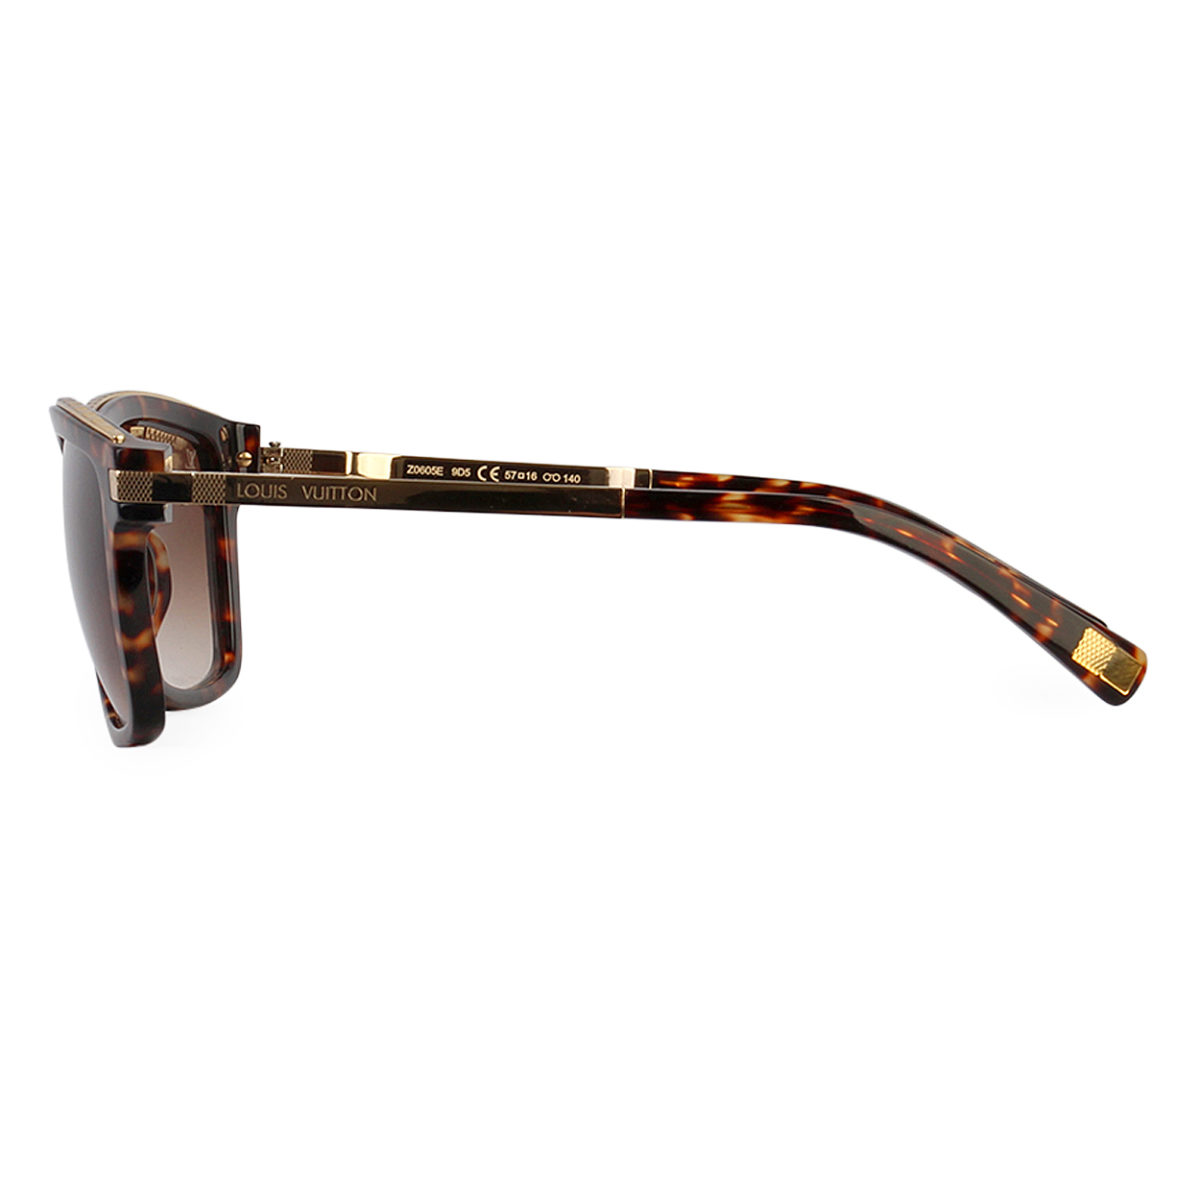 Authentic+Louis+Vuitton+Attitude+Pilote+Sunglasses+Z0339U+Brown+Lenses+Gold  for sale online